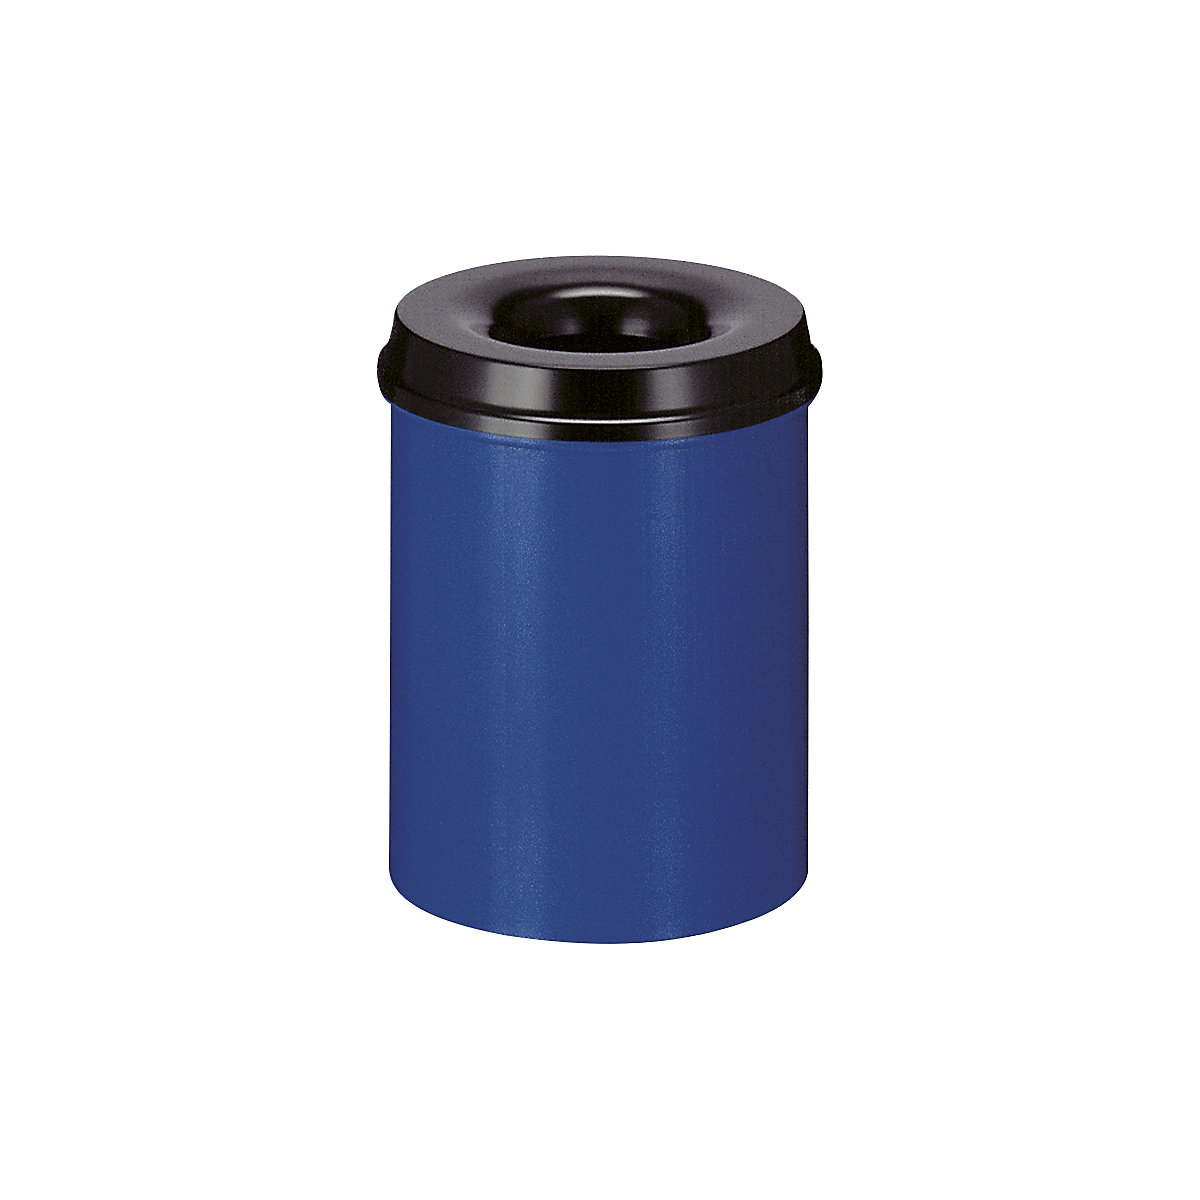 Corbeille à papier auto-extinguible, capacité 15 l, h x Ø 360 x 255 mm, corps bleu / étouffoir noir